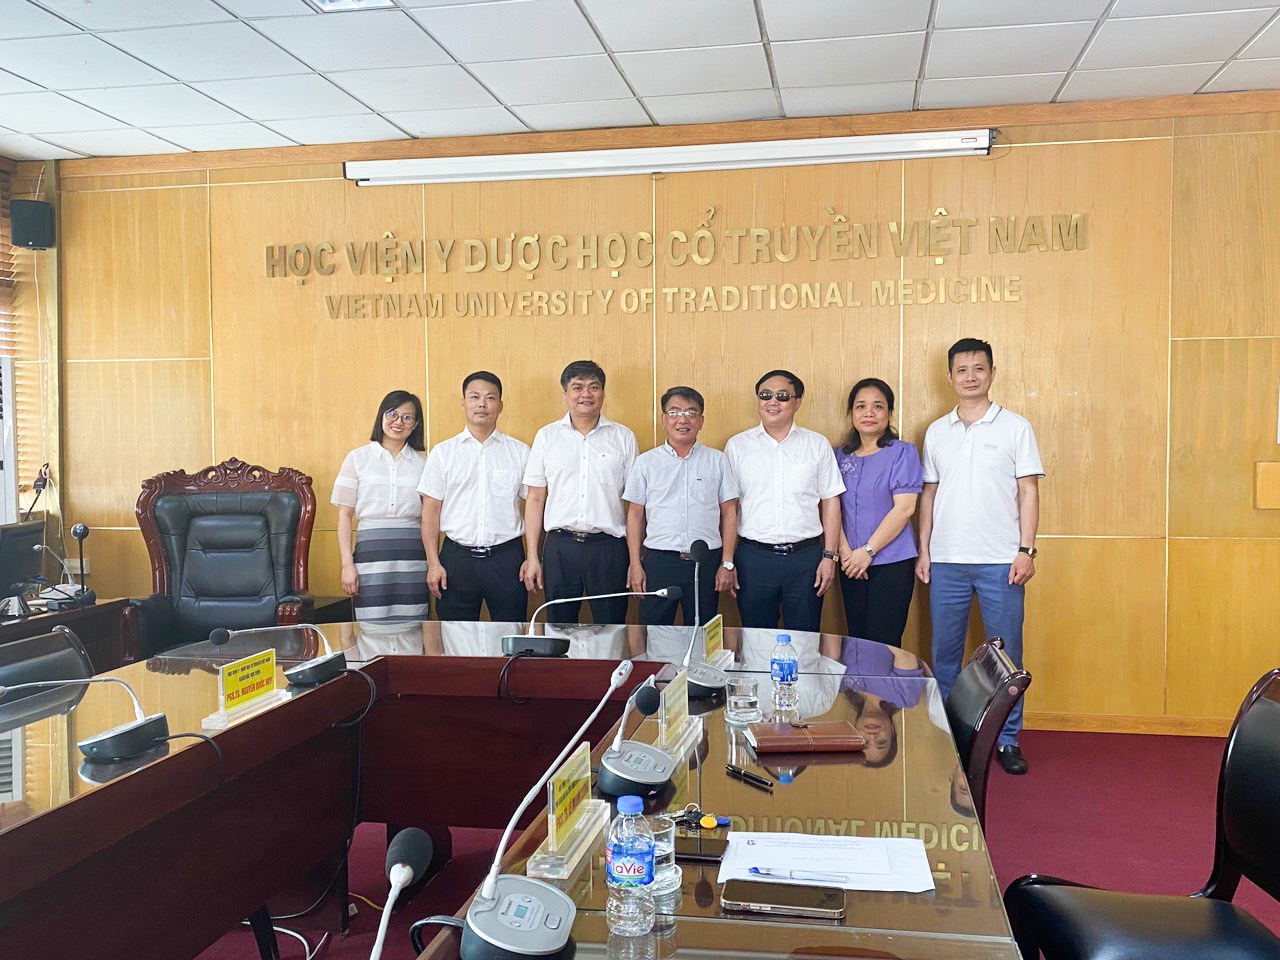 Hình ảnh: Thúc đẩy hợp tác đào tạo và phát triển nghề Xoa bóp bấm huyệt giữa Trung tâm Đào tạo cán bộ PHCN cho người mù và Học viện Y Dược học cổ truyền Việt Nam